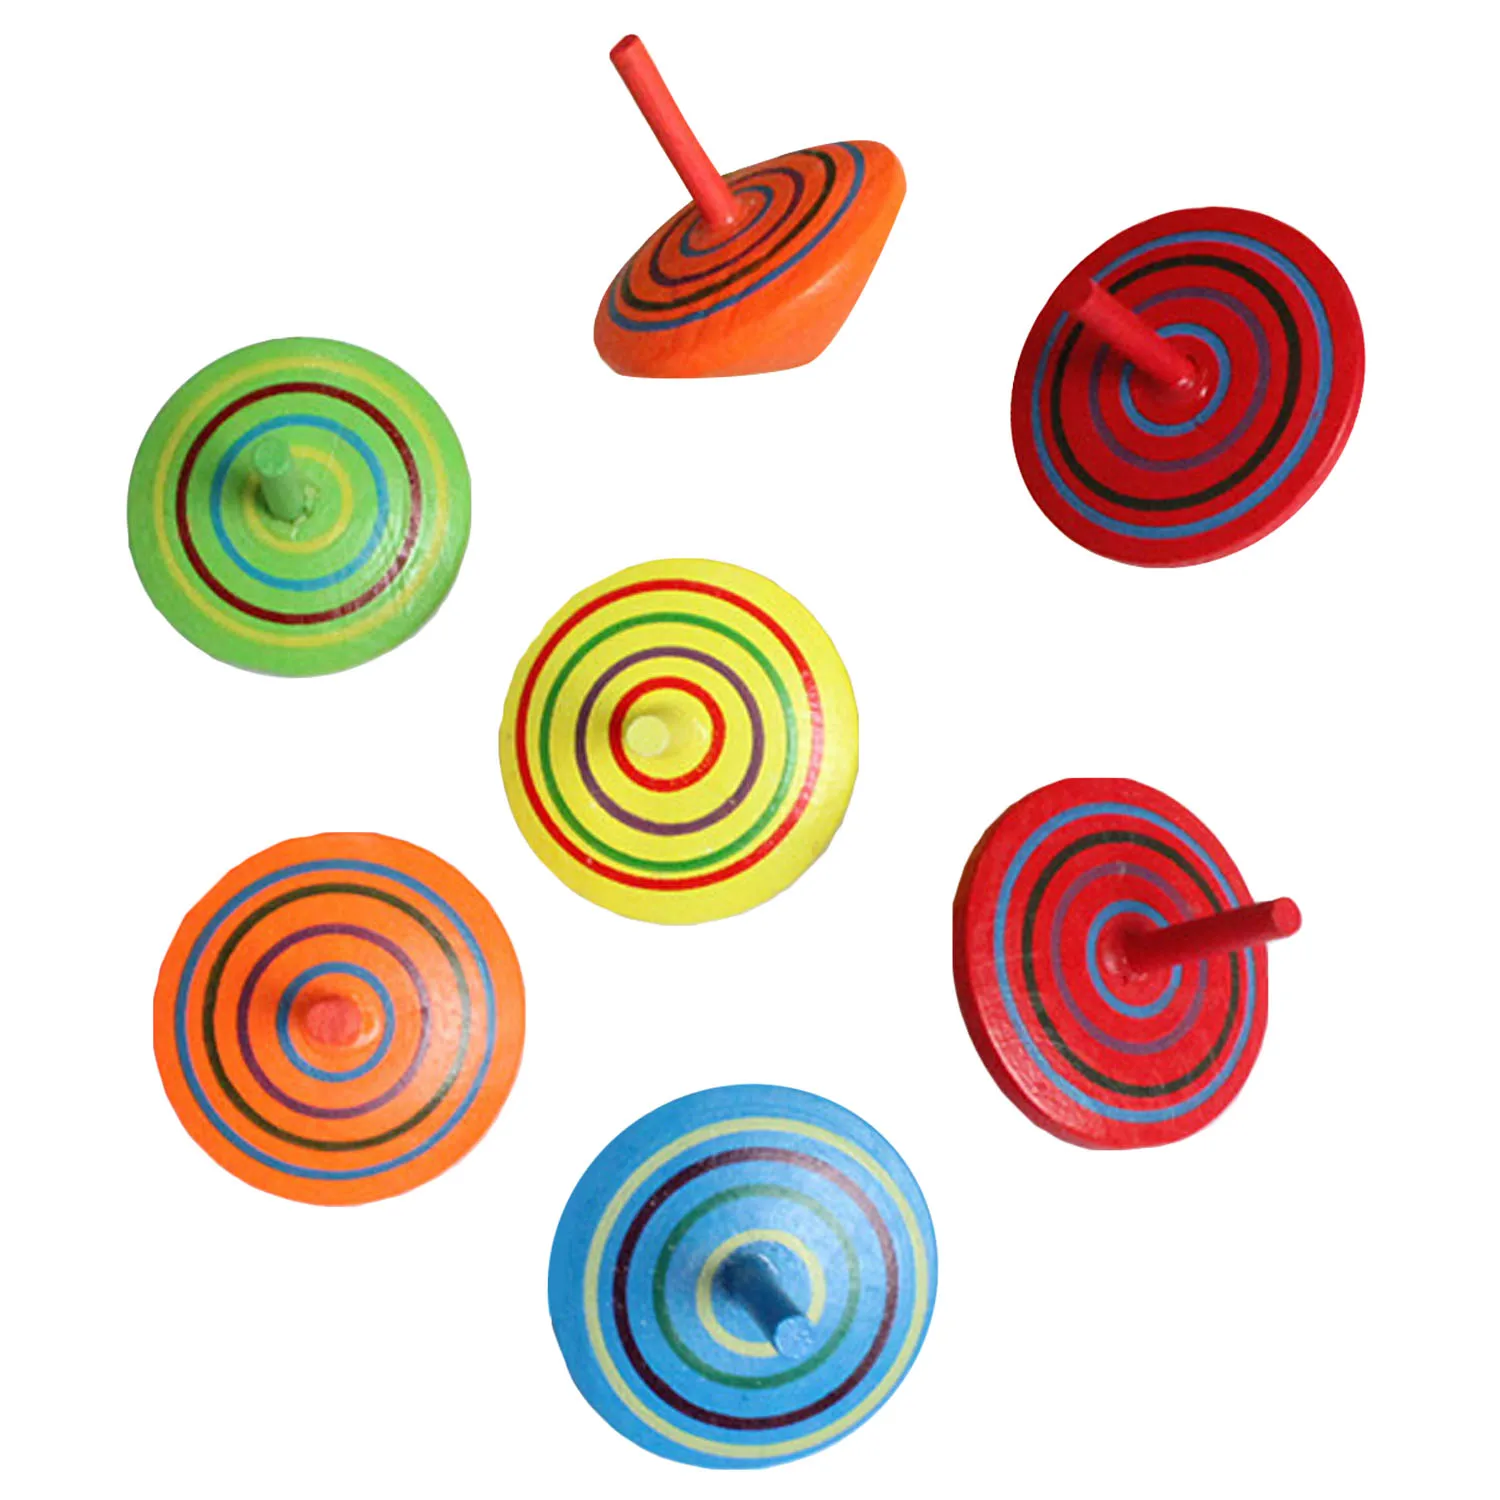 30 шт. ручная роспись деревянный волчок игрушка Детские развивающие игрушки для детского сада детские случайные цвета